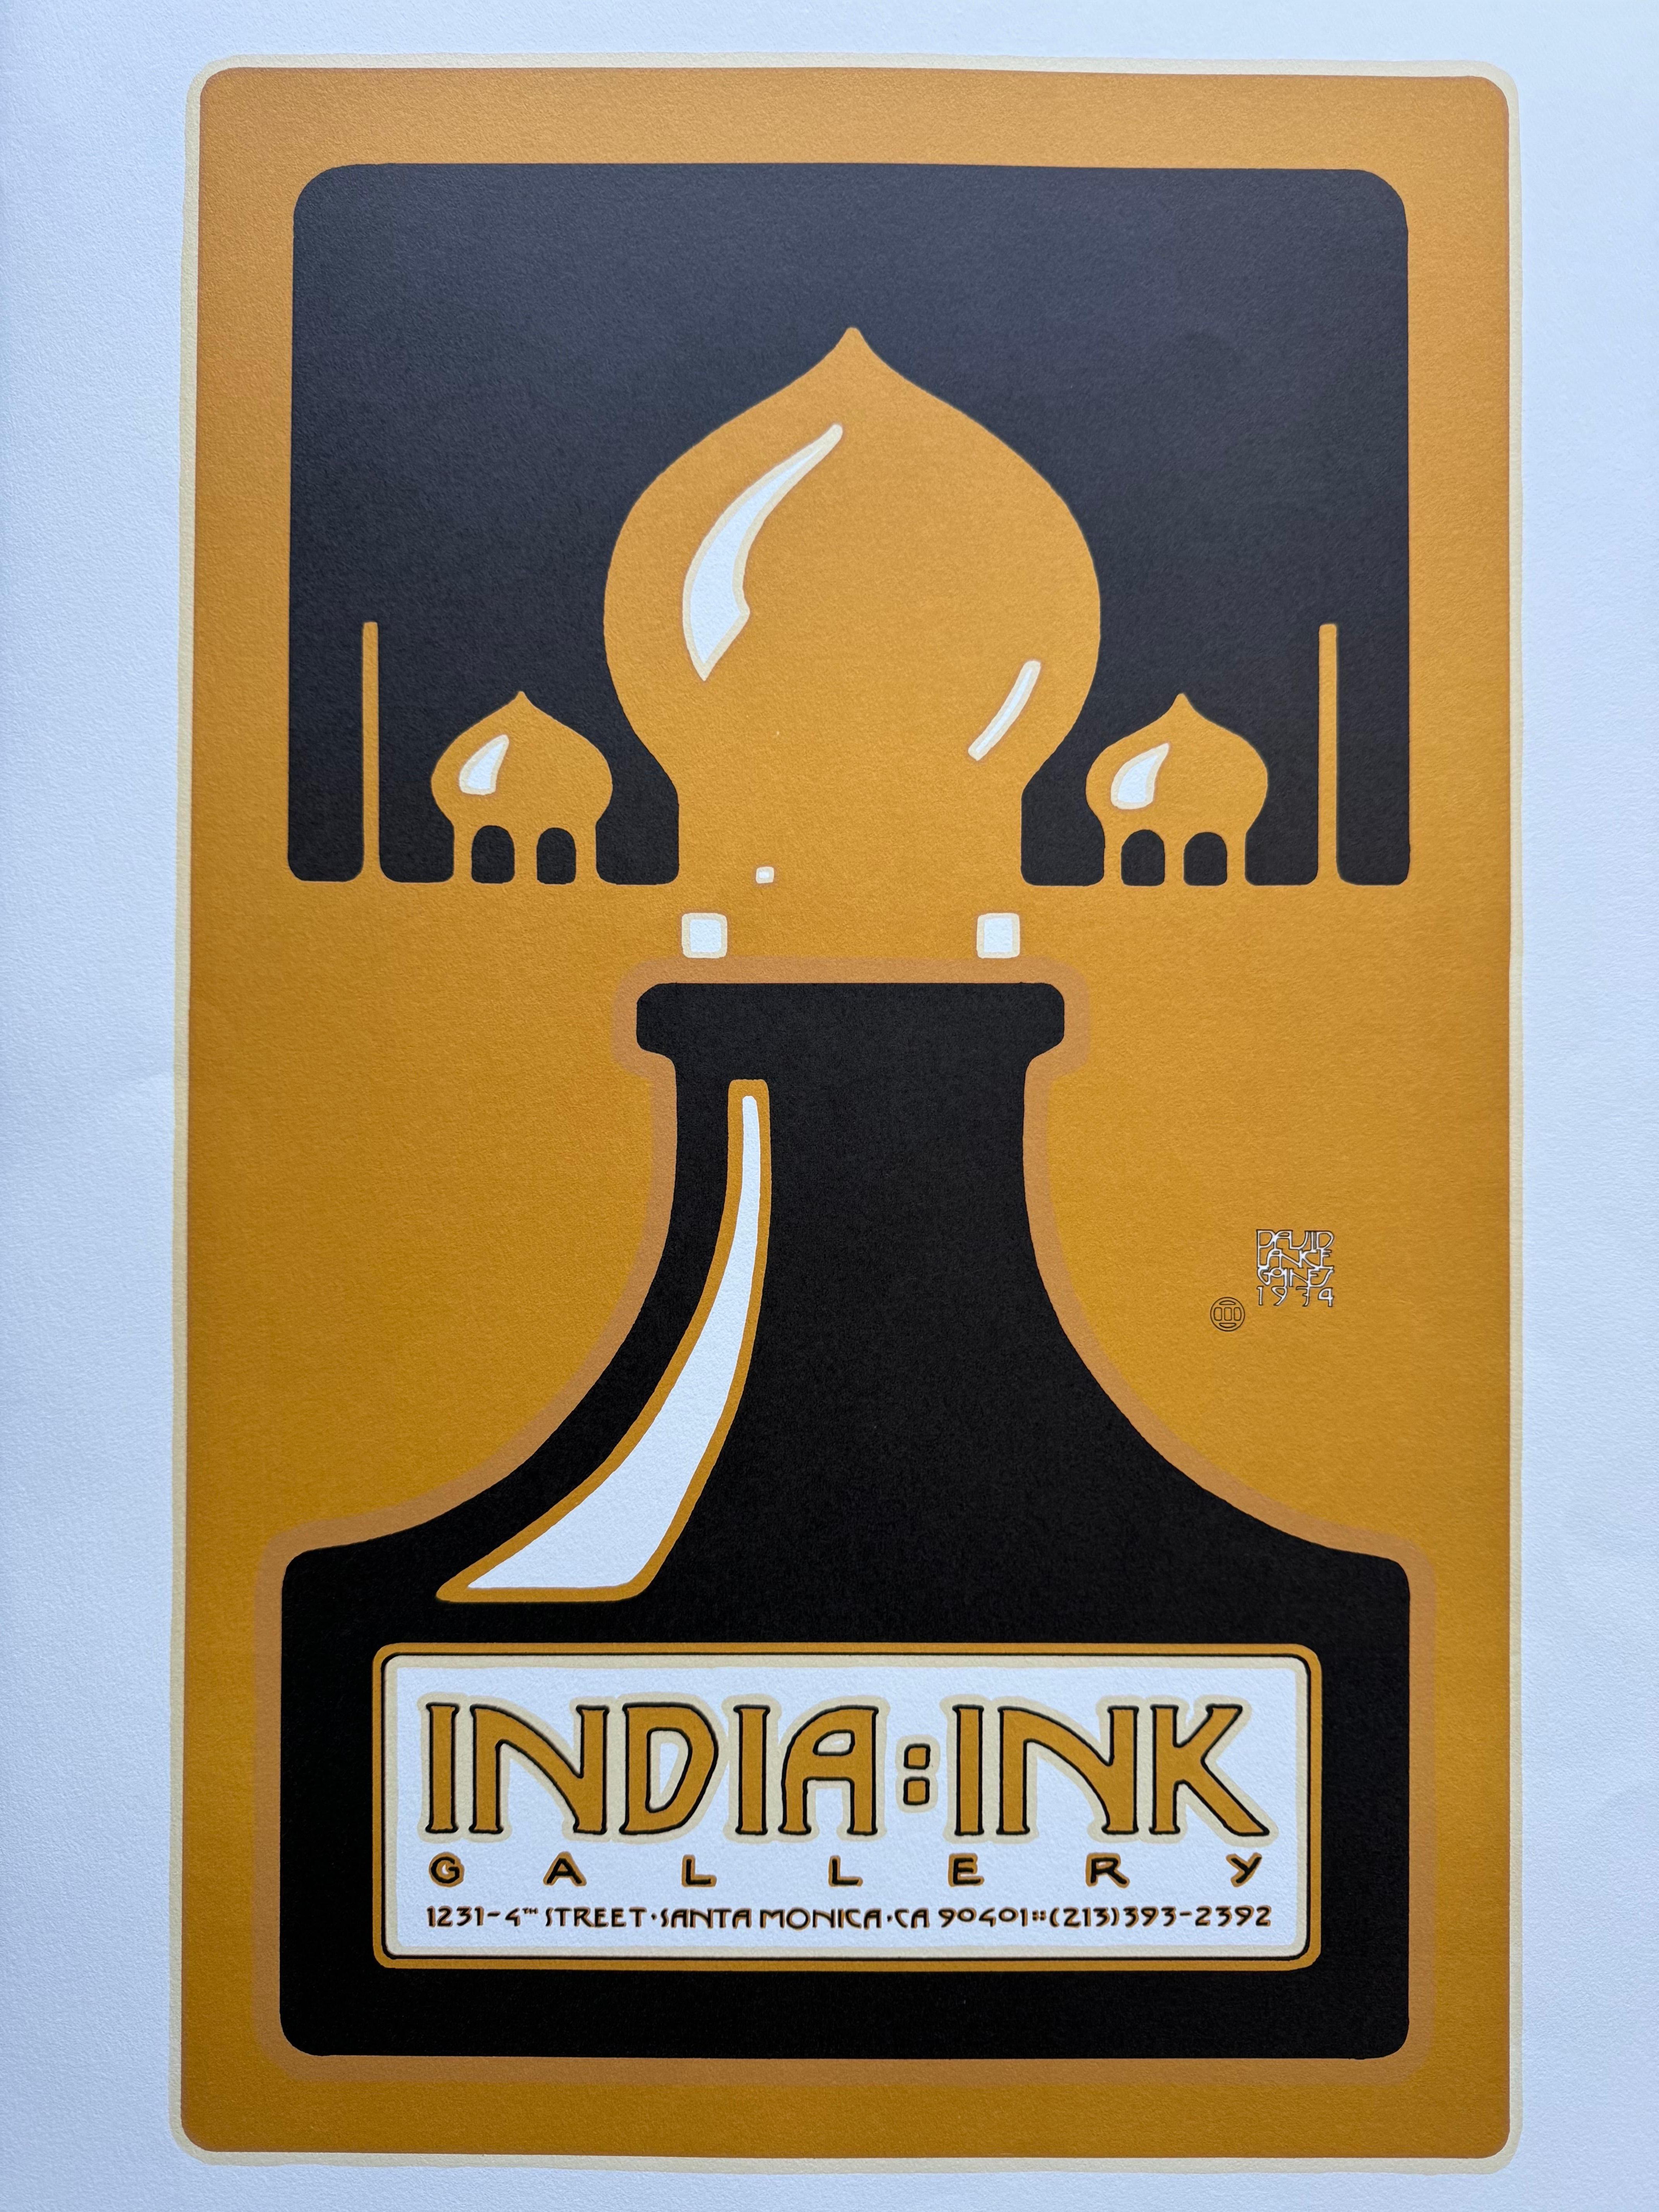 Magnifique tirage de David Lance Goines pour la India Ink Gallery à Los Angeles. Il s'agit de la deuxième édition, imprimée sur du papier épais en 1974. 

Ce tirage est en très bon état, voir les photos pour plus de